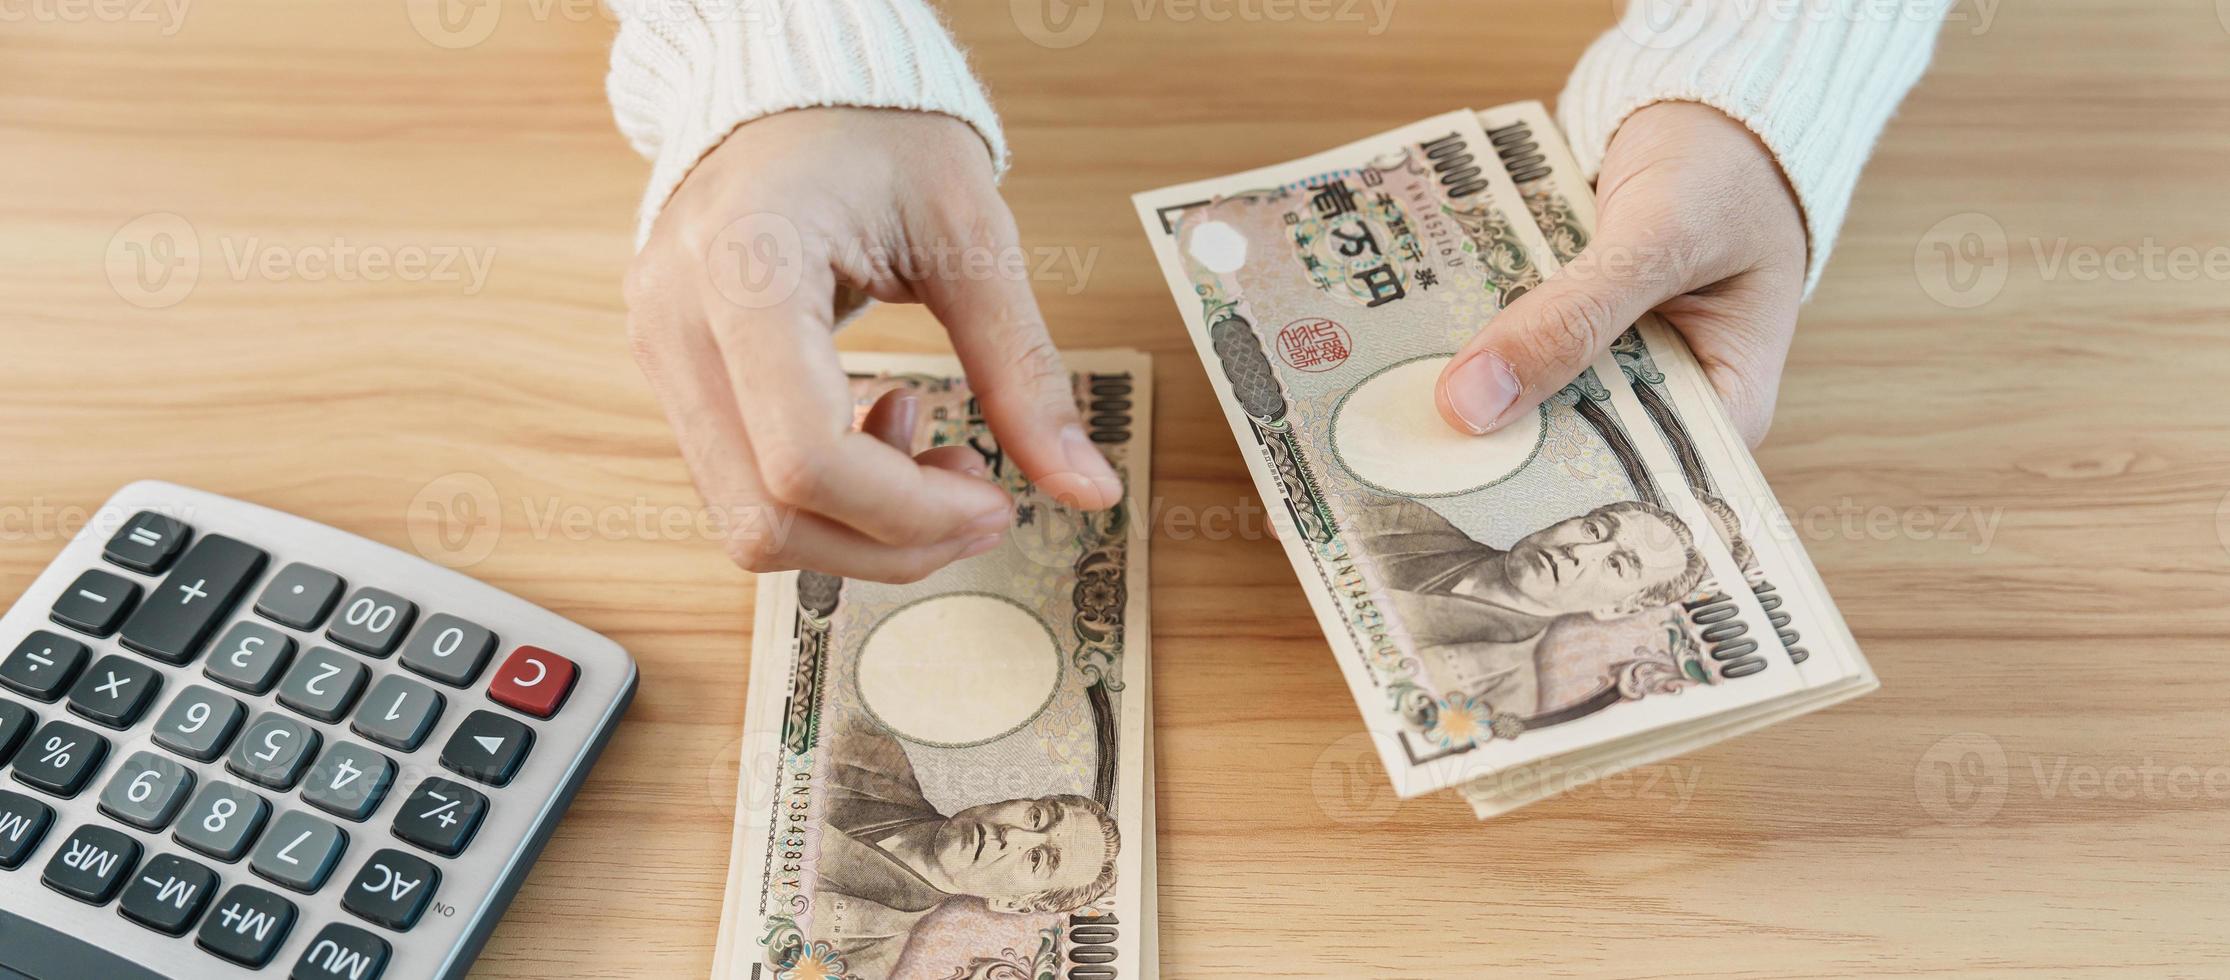 Frauenhand, die japanische Yen-Banknote mit Taschenrechner zählt. Tausend Yen Geld. japan bargeld, steuer, rezessionswirtschaft, inflation, investition, finanzen, einsparungen, gehalts- und zahlungskonzepte foto